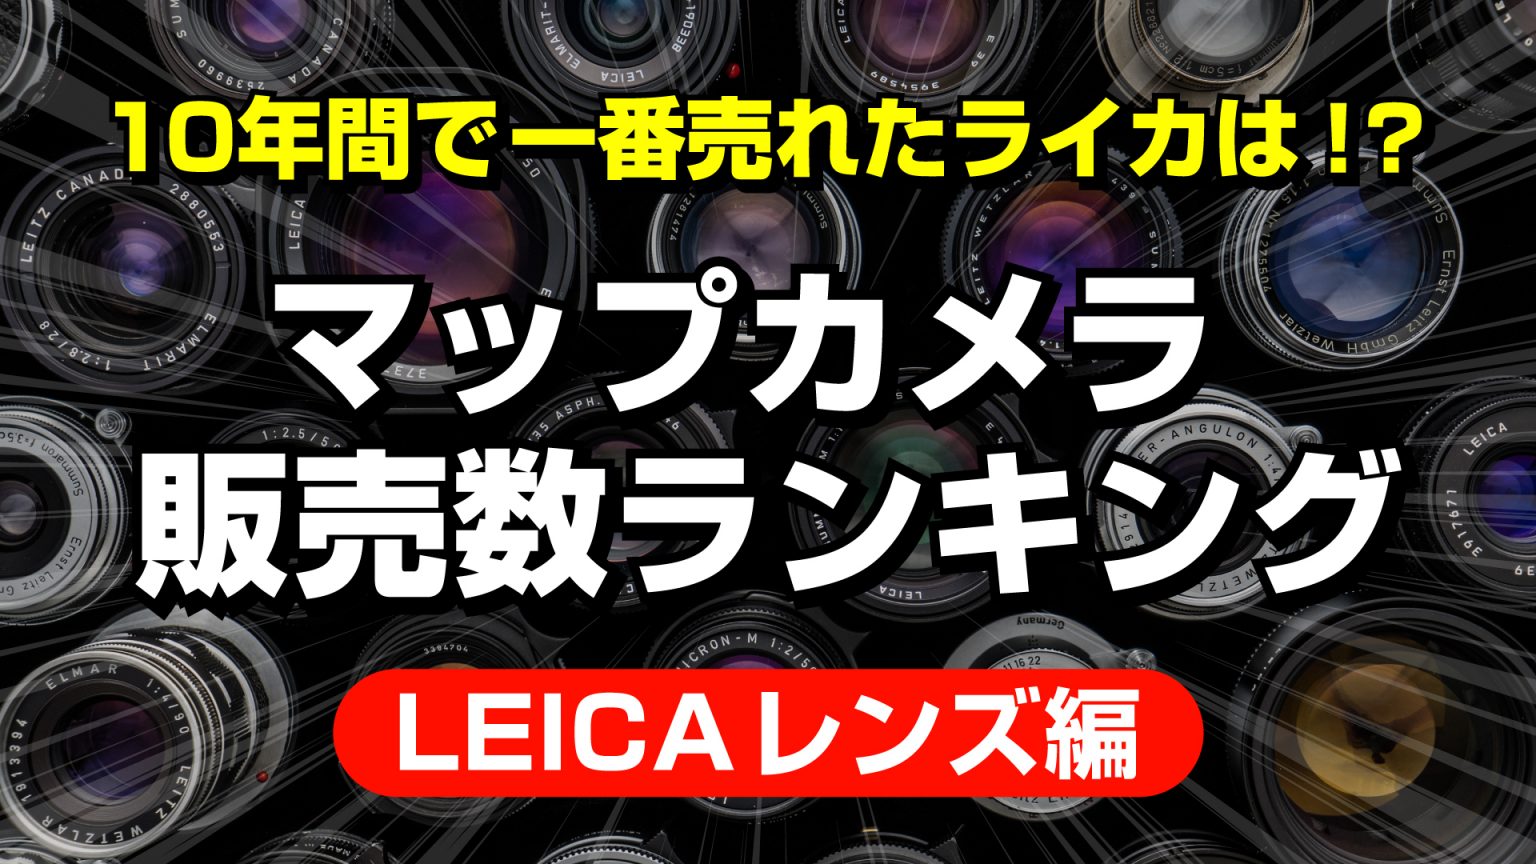 【leica Boutique 10th】Leica製品10年間売上ランキング（レンズ編）